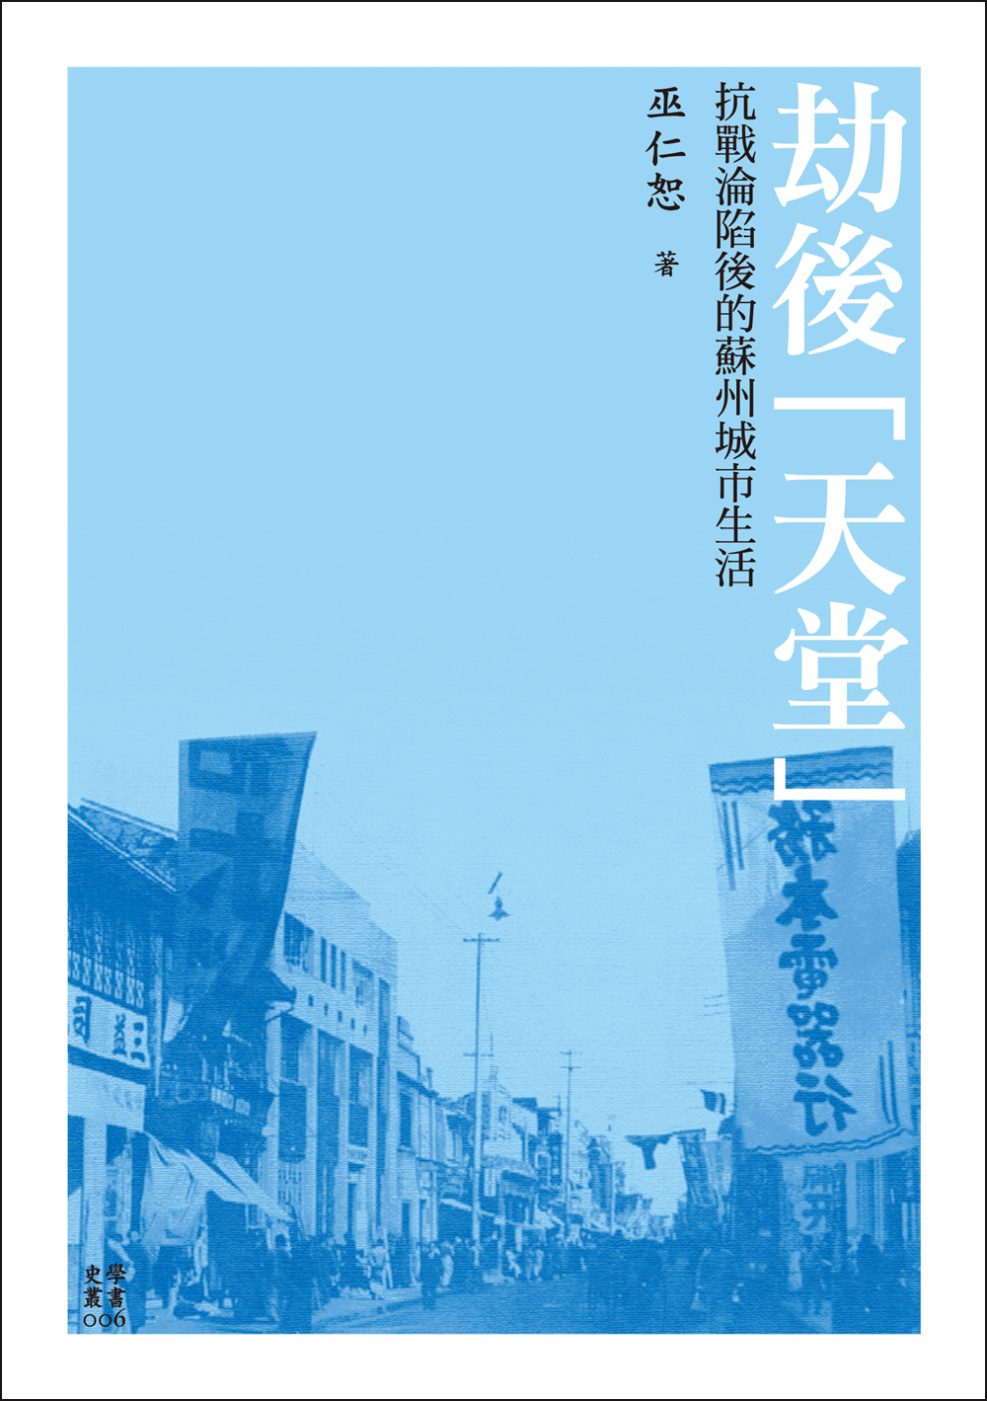 劫後「天堂」：抗戰淪陷後的蘇州城市生活